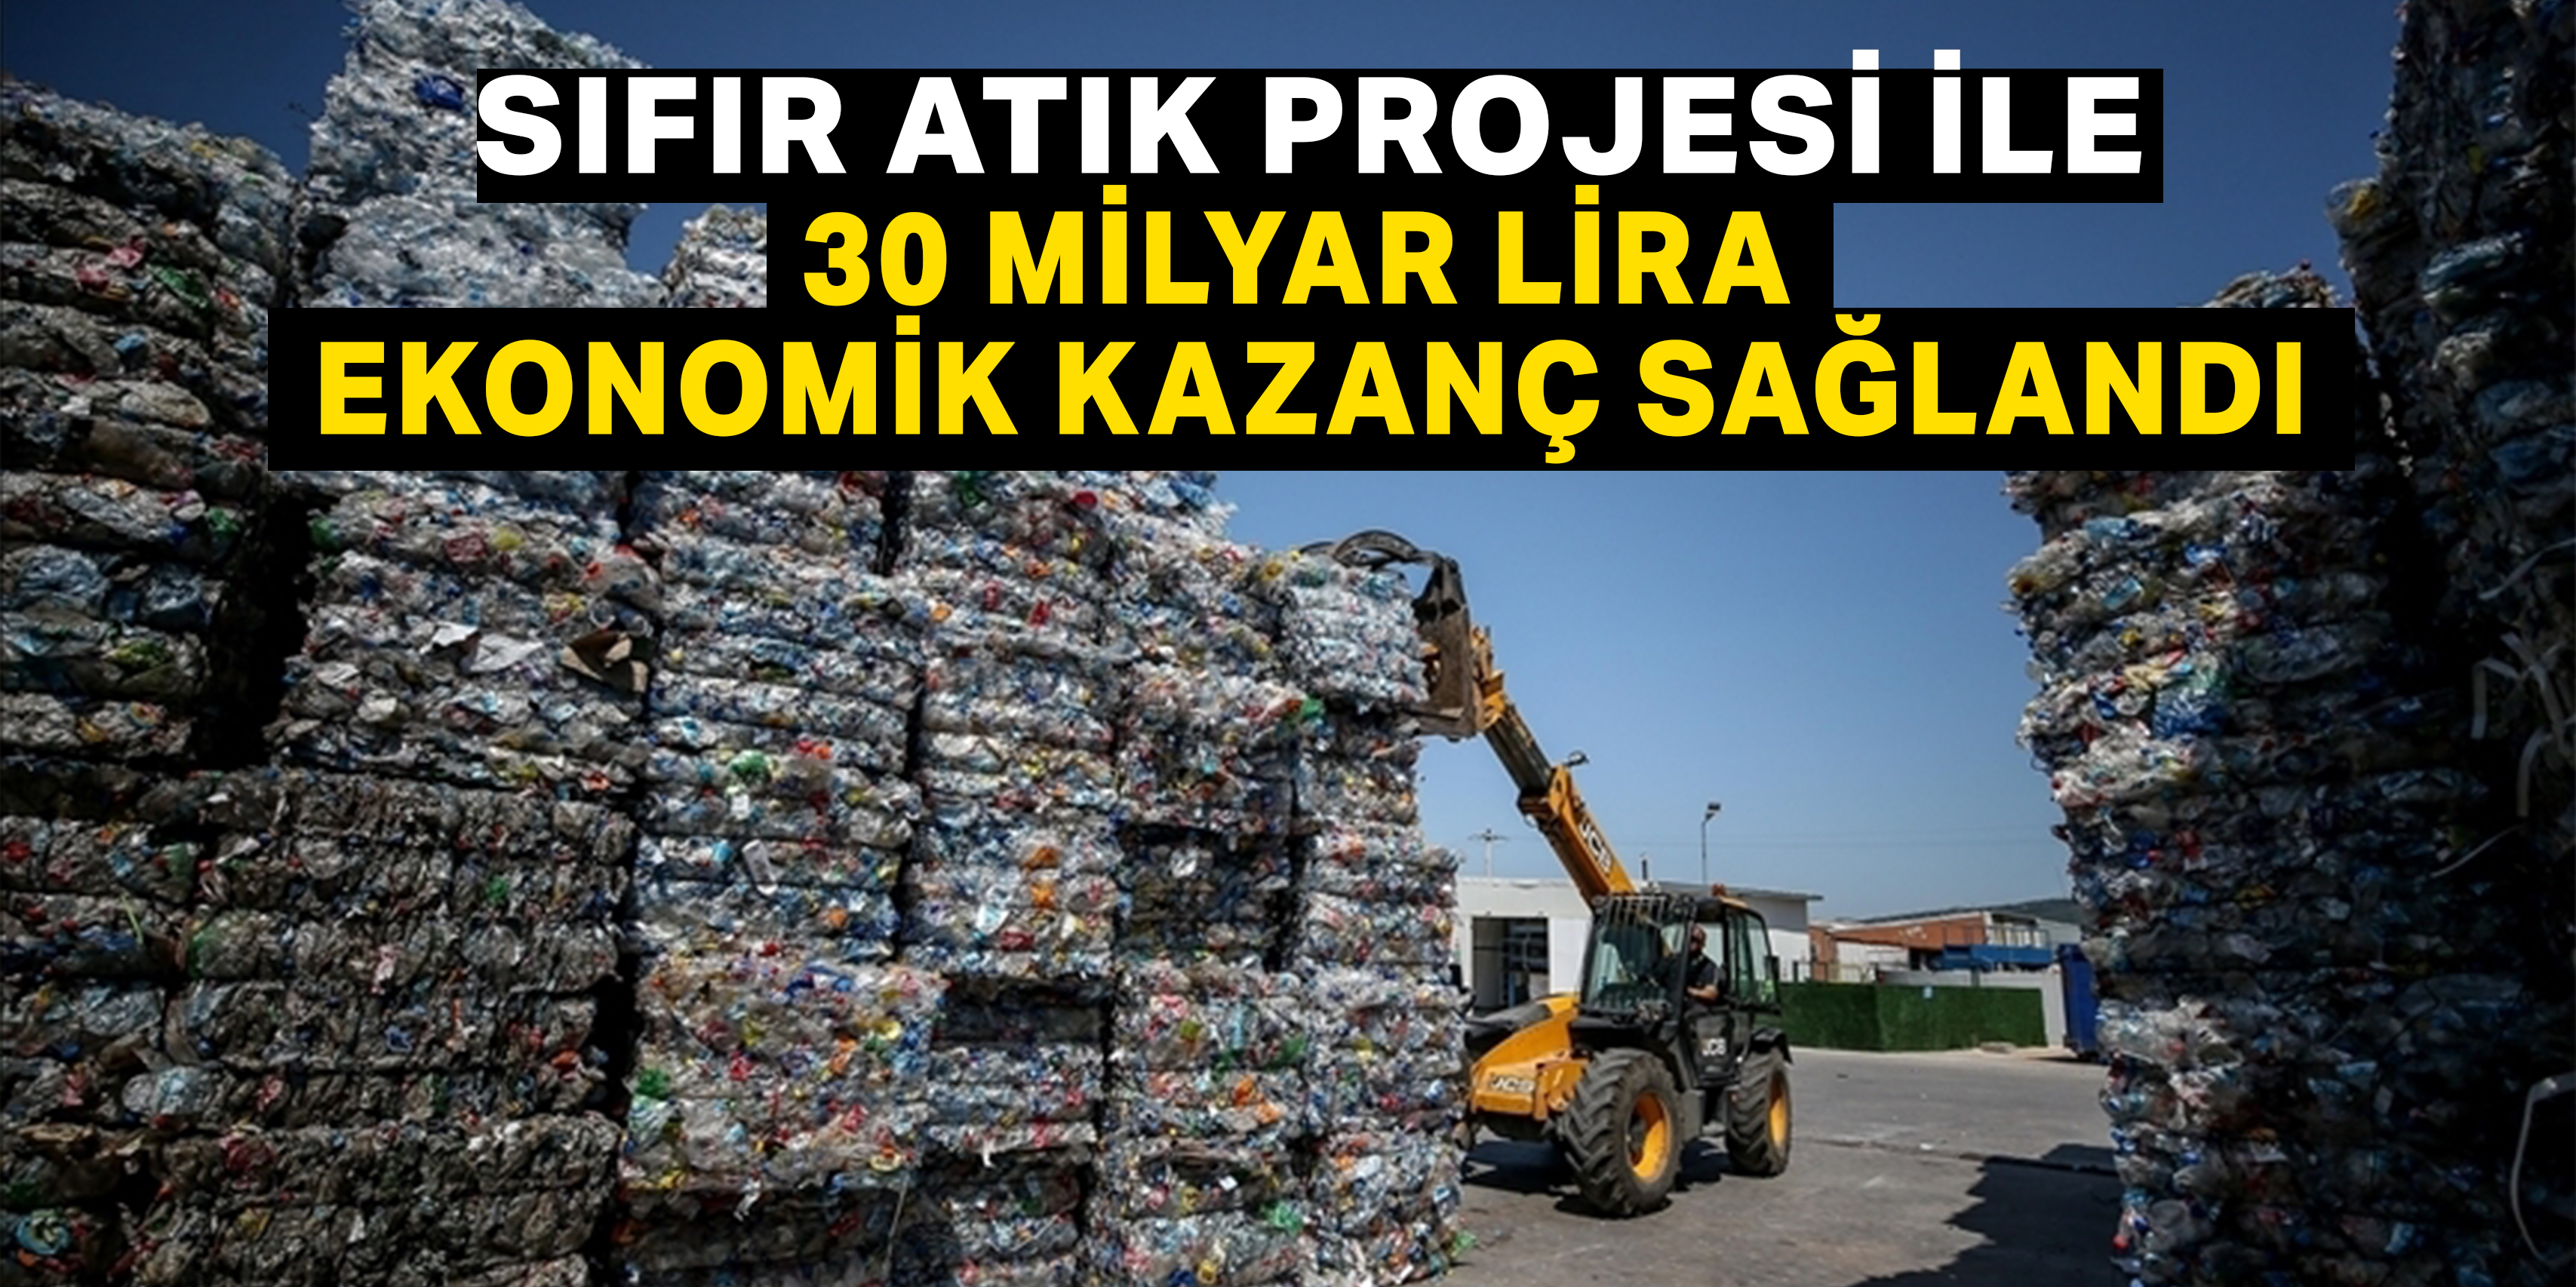 Sıfır Atık Projesiyle atıklardan 30 milyar lira ekonomik kazanç sağlandı